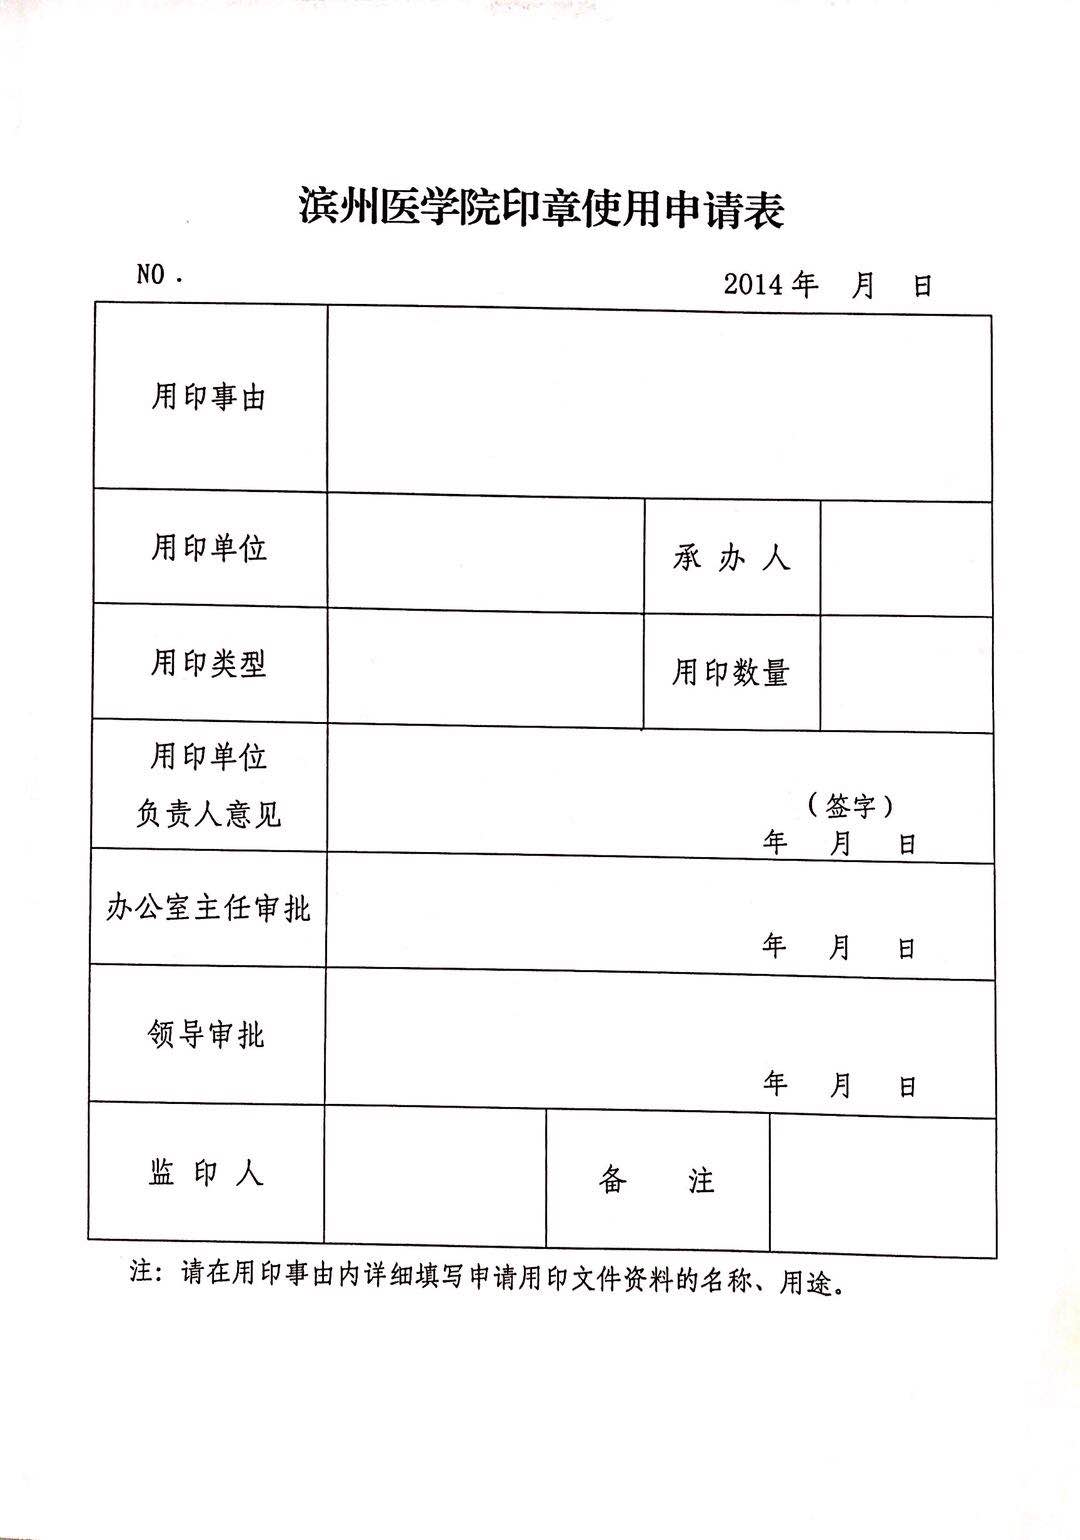 滨州医学院印章使用申请表.jpg